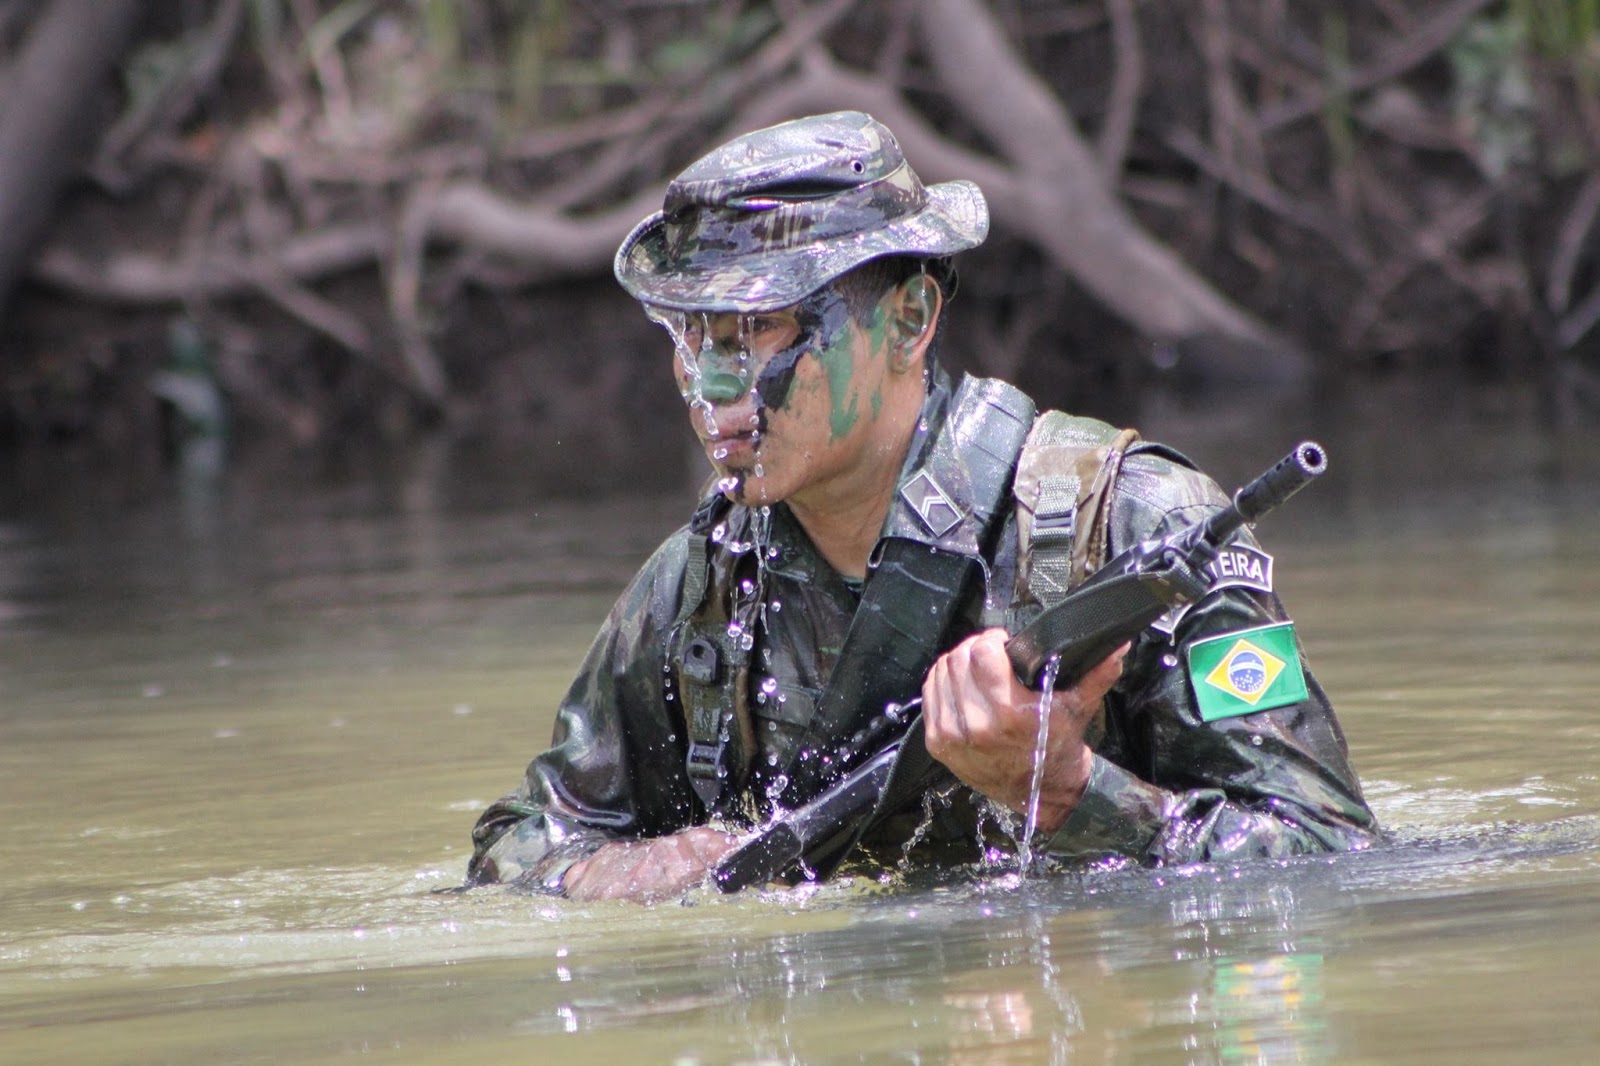 Brasil deve exigir contrapartida por exercícios militares dos EUA na  Amazônia, diz analista